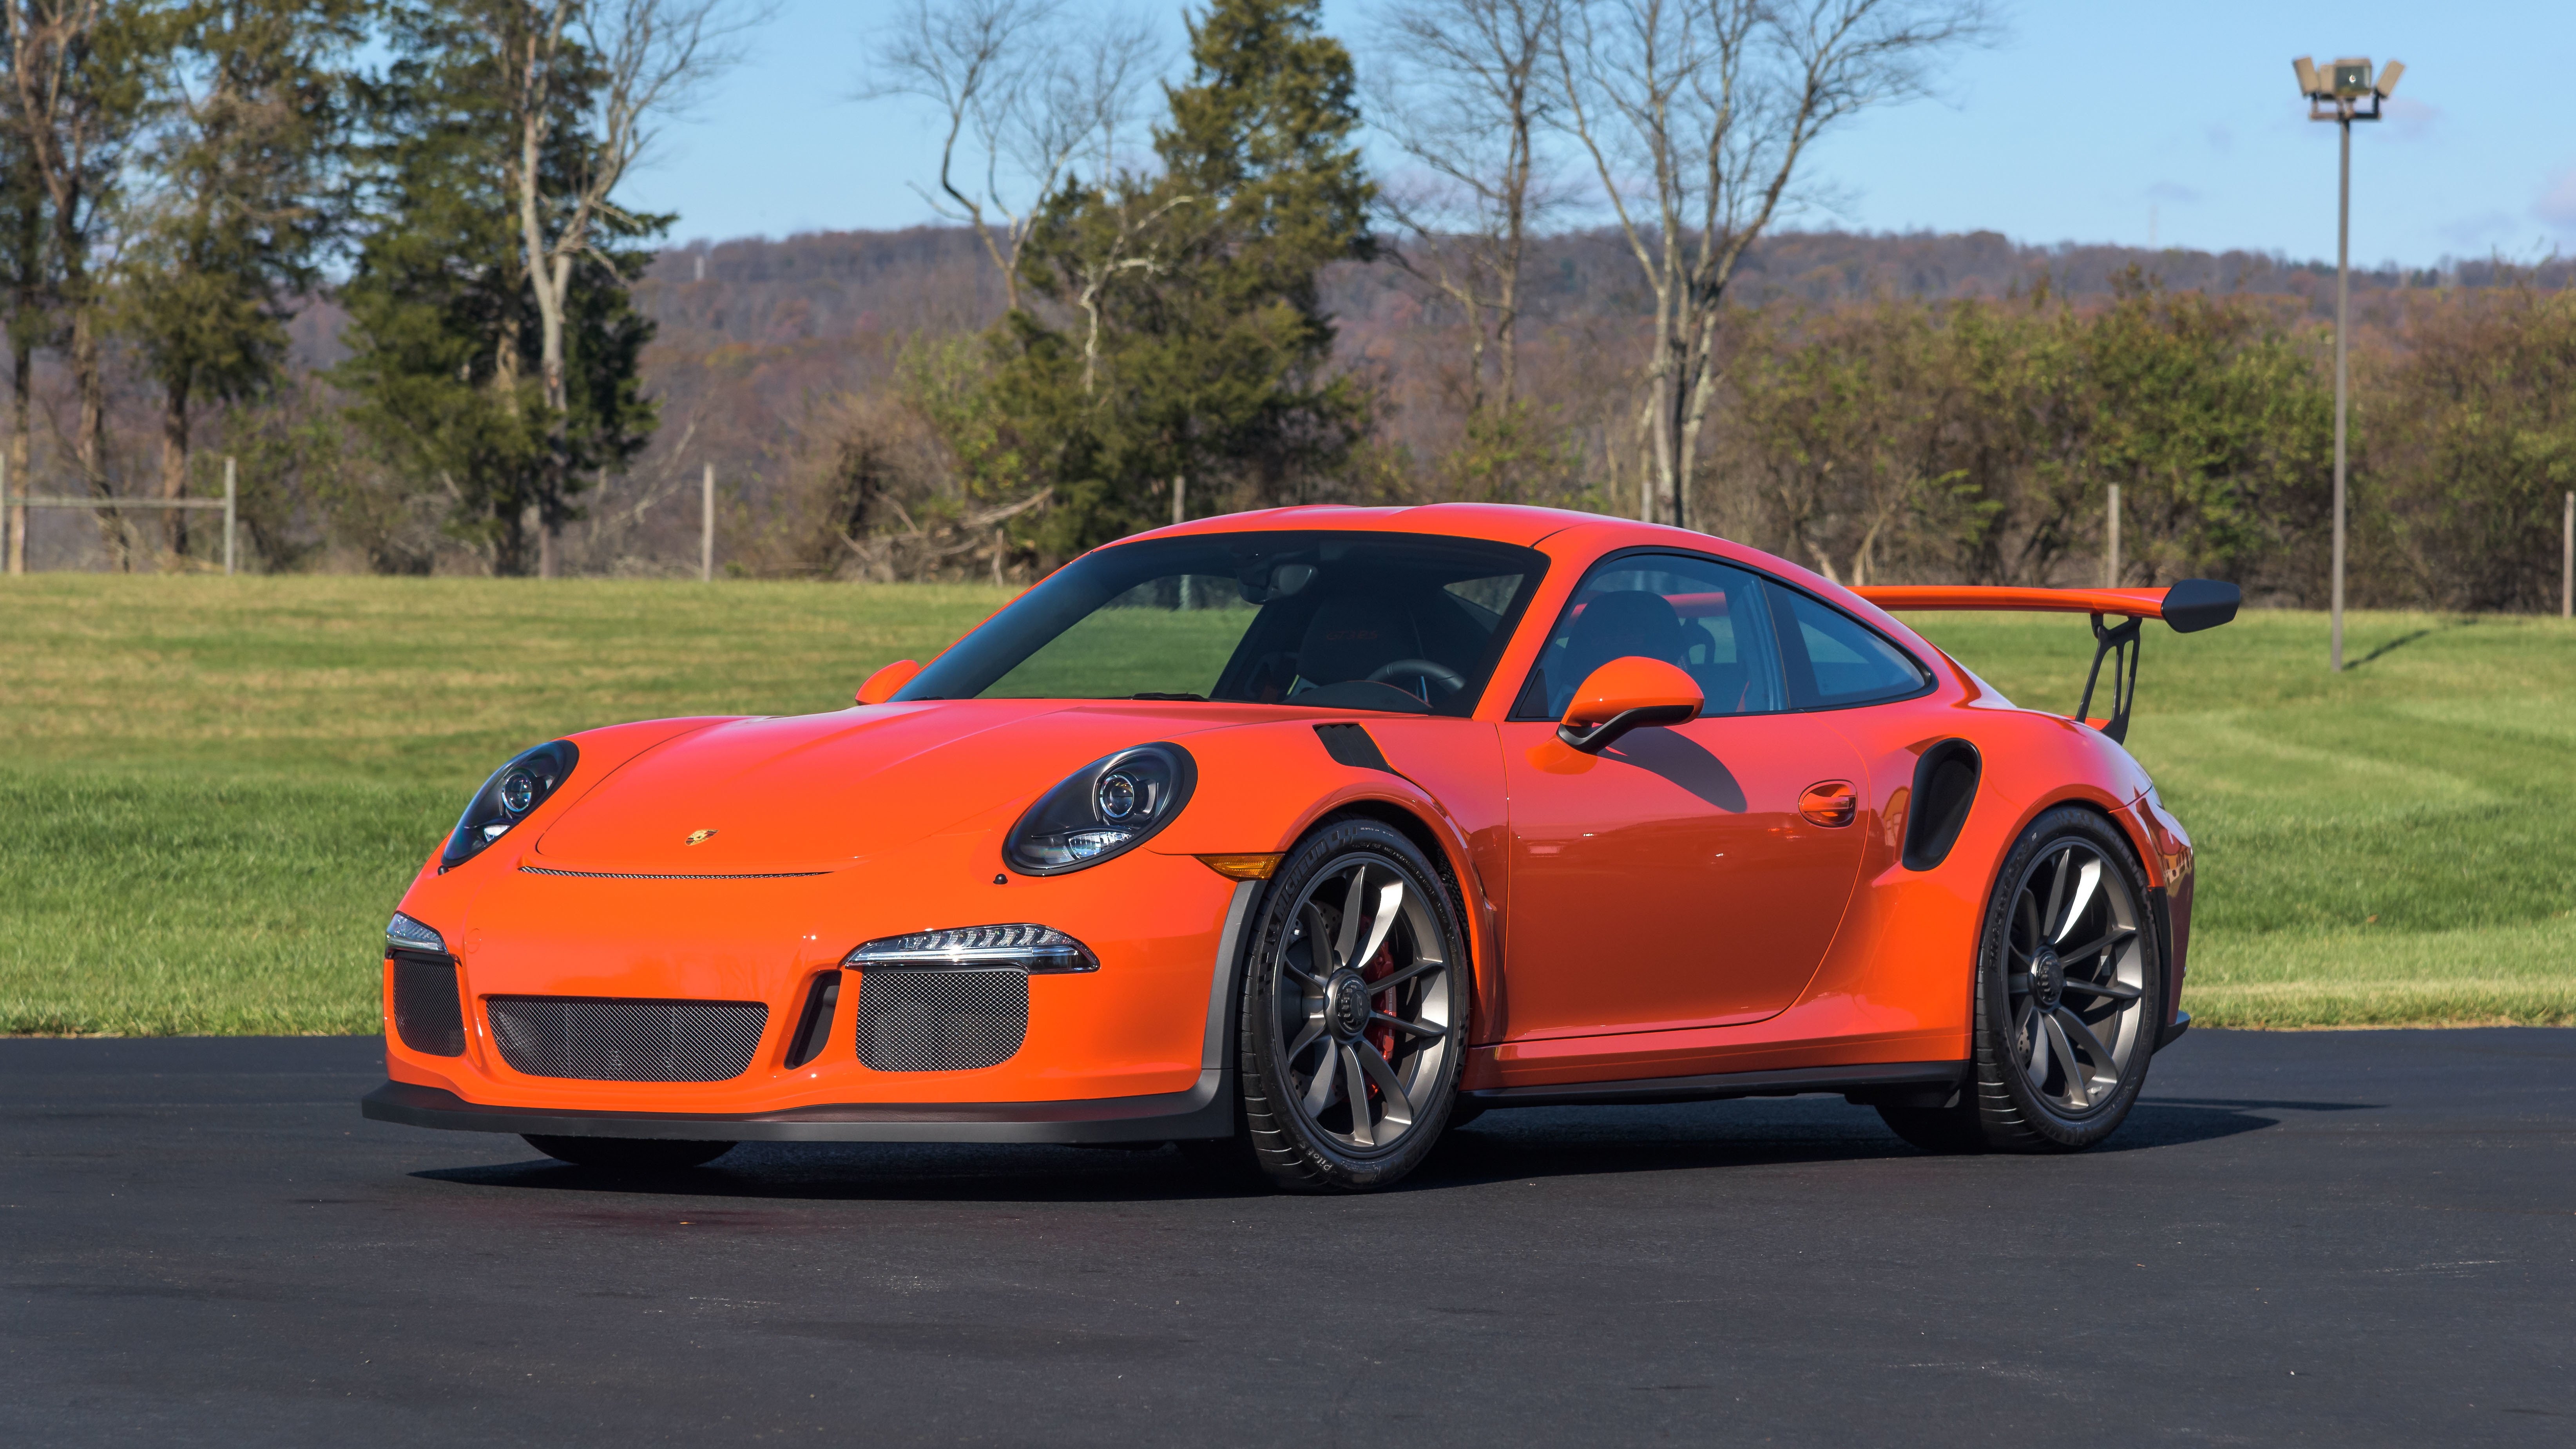 Porsche 911 GT3 RS in orange.